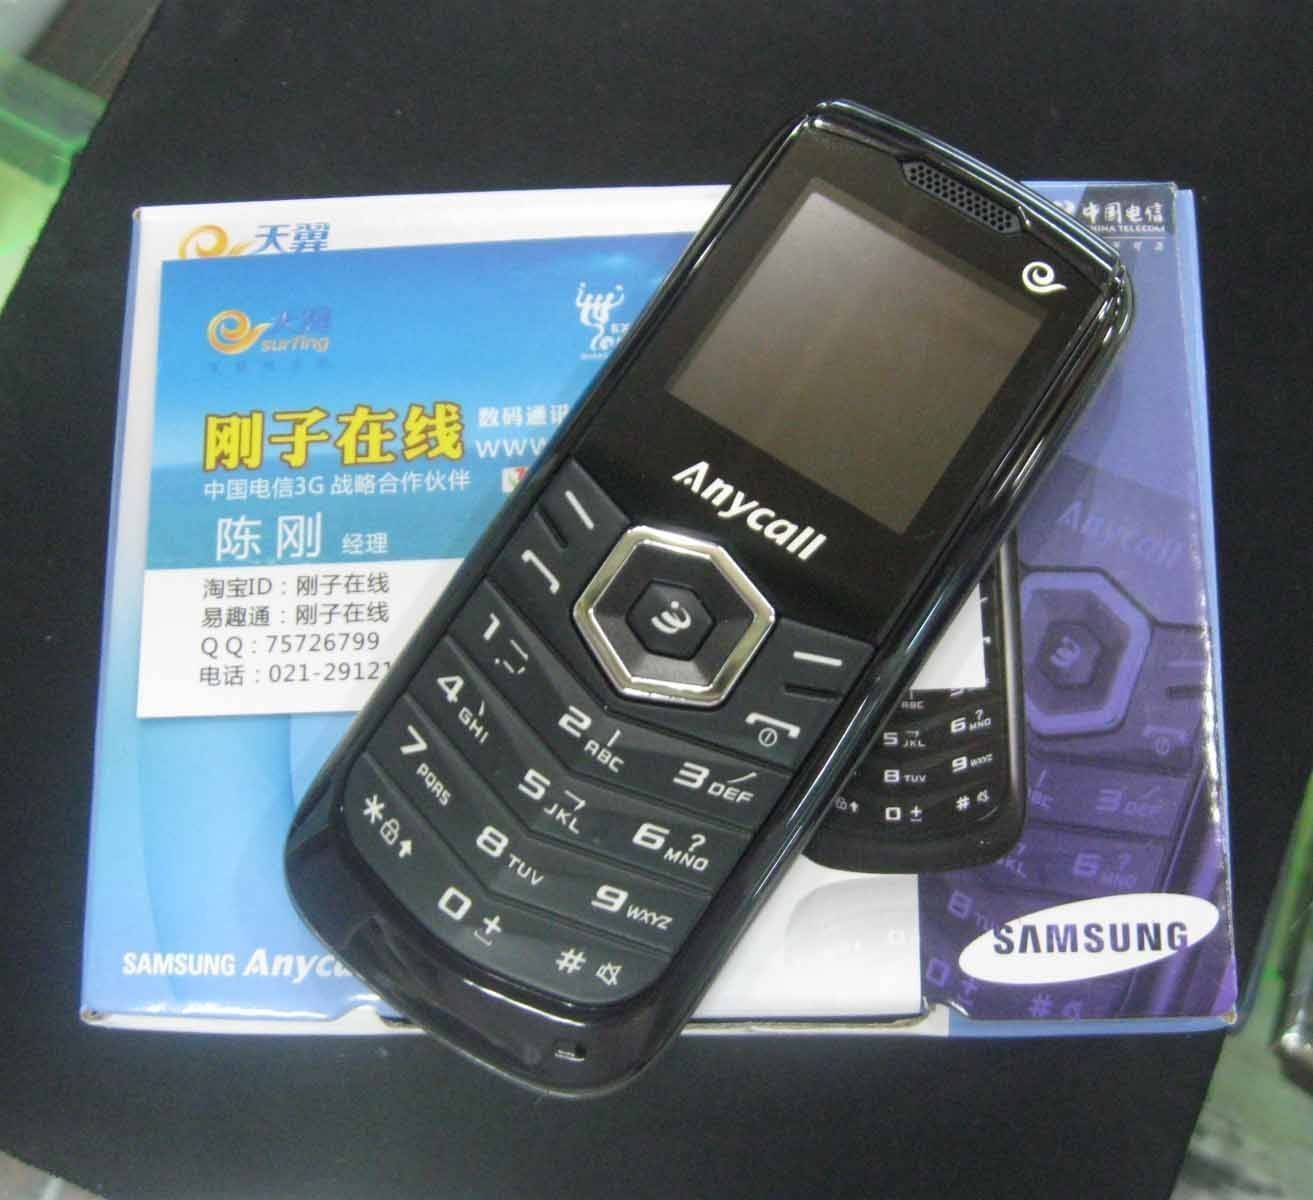 Samsung E189